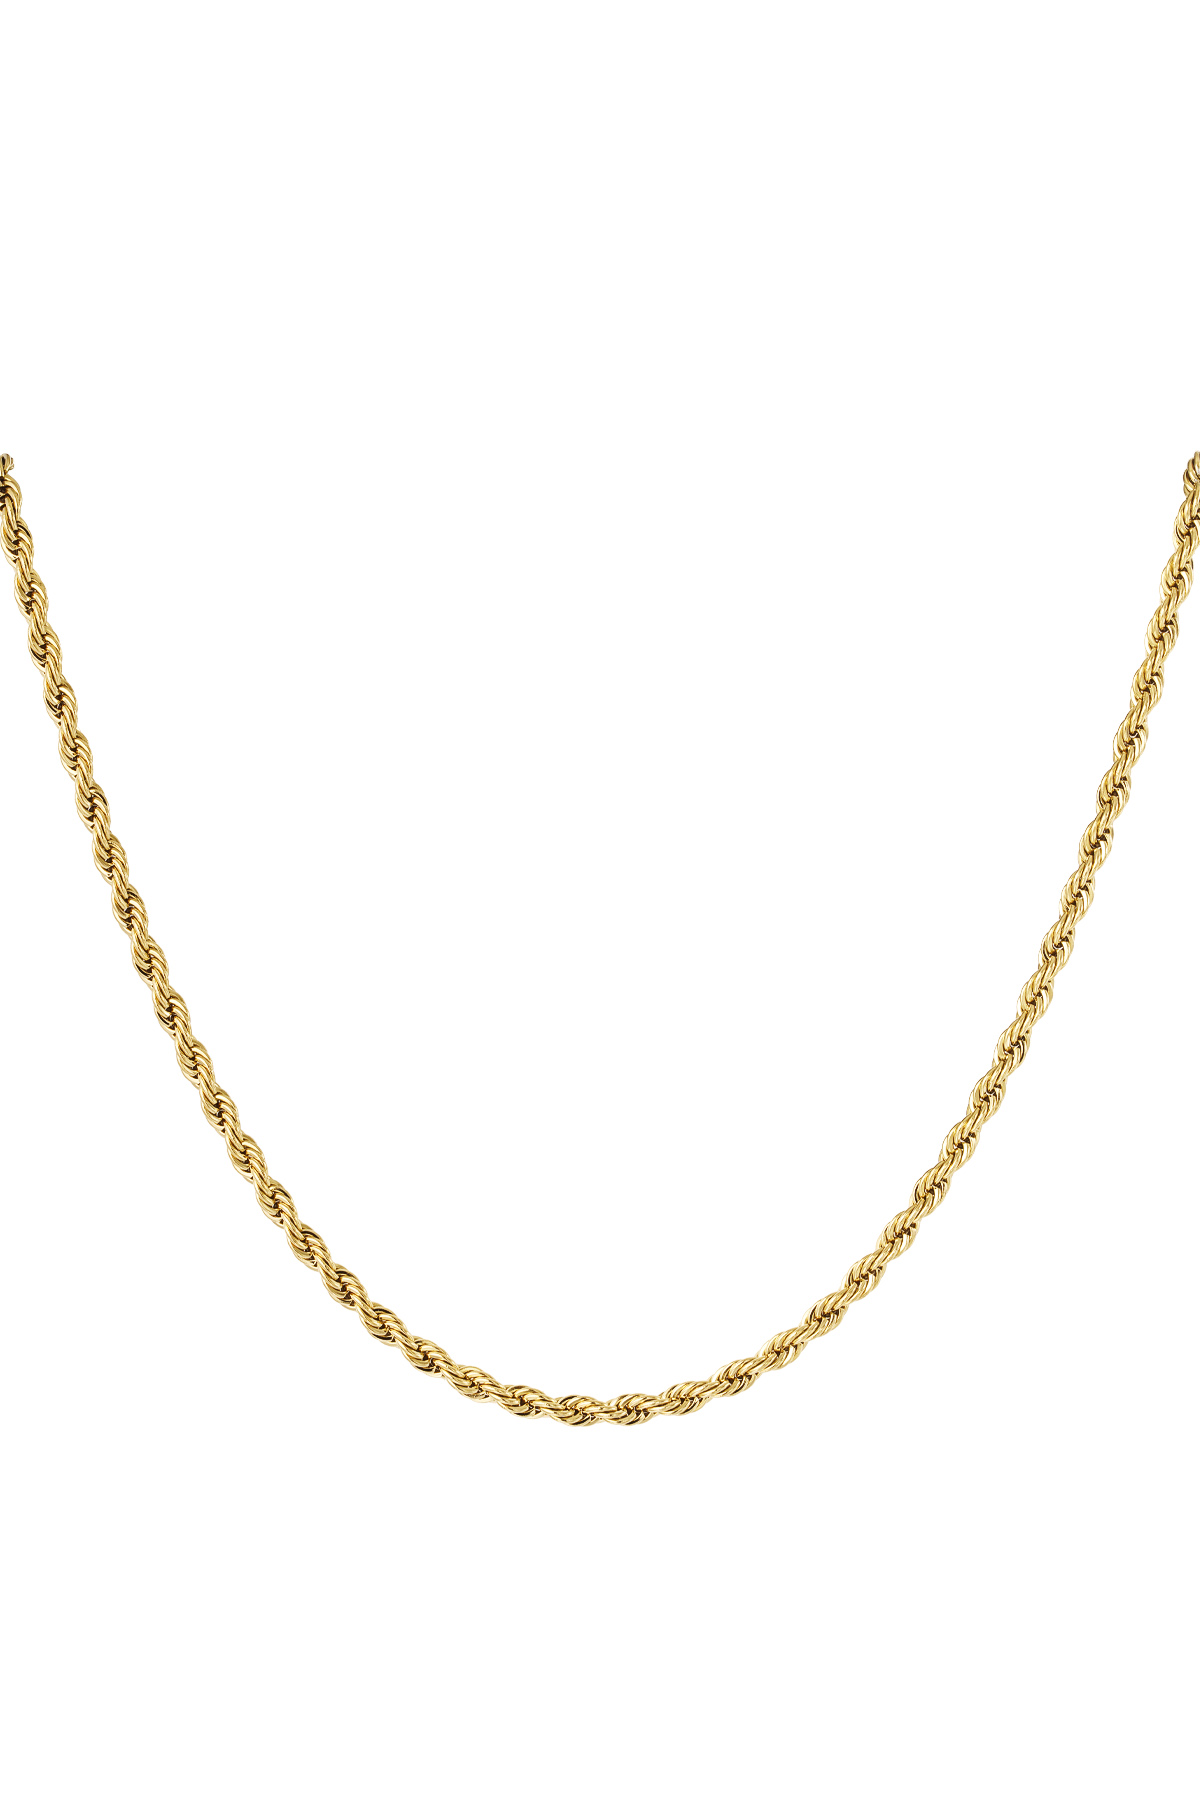 Gedrehte Unisex-Kette, lang, 60 cm – Gold – 4,0 mm 